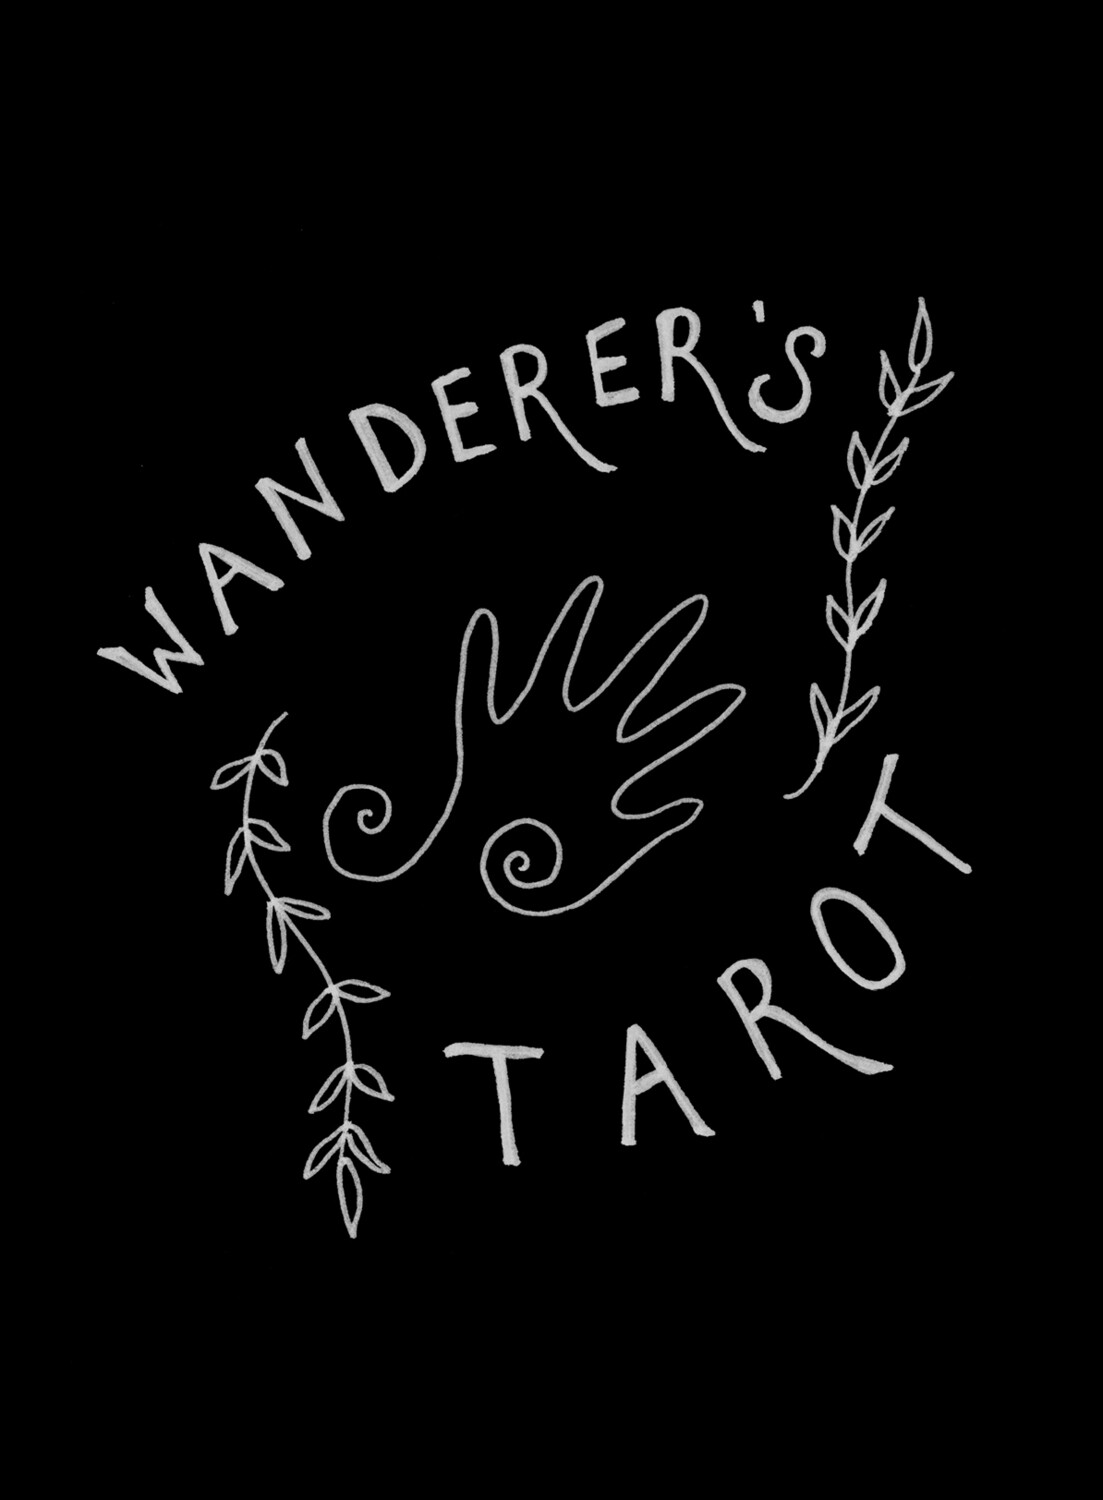 Wanderer's Tarot